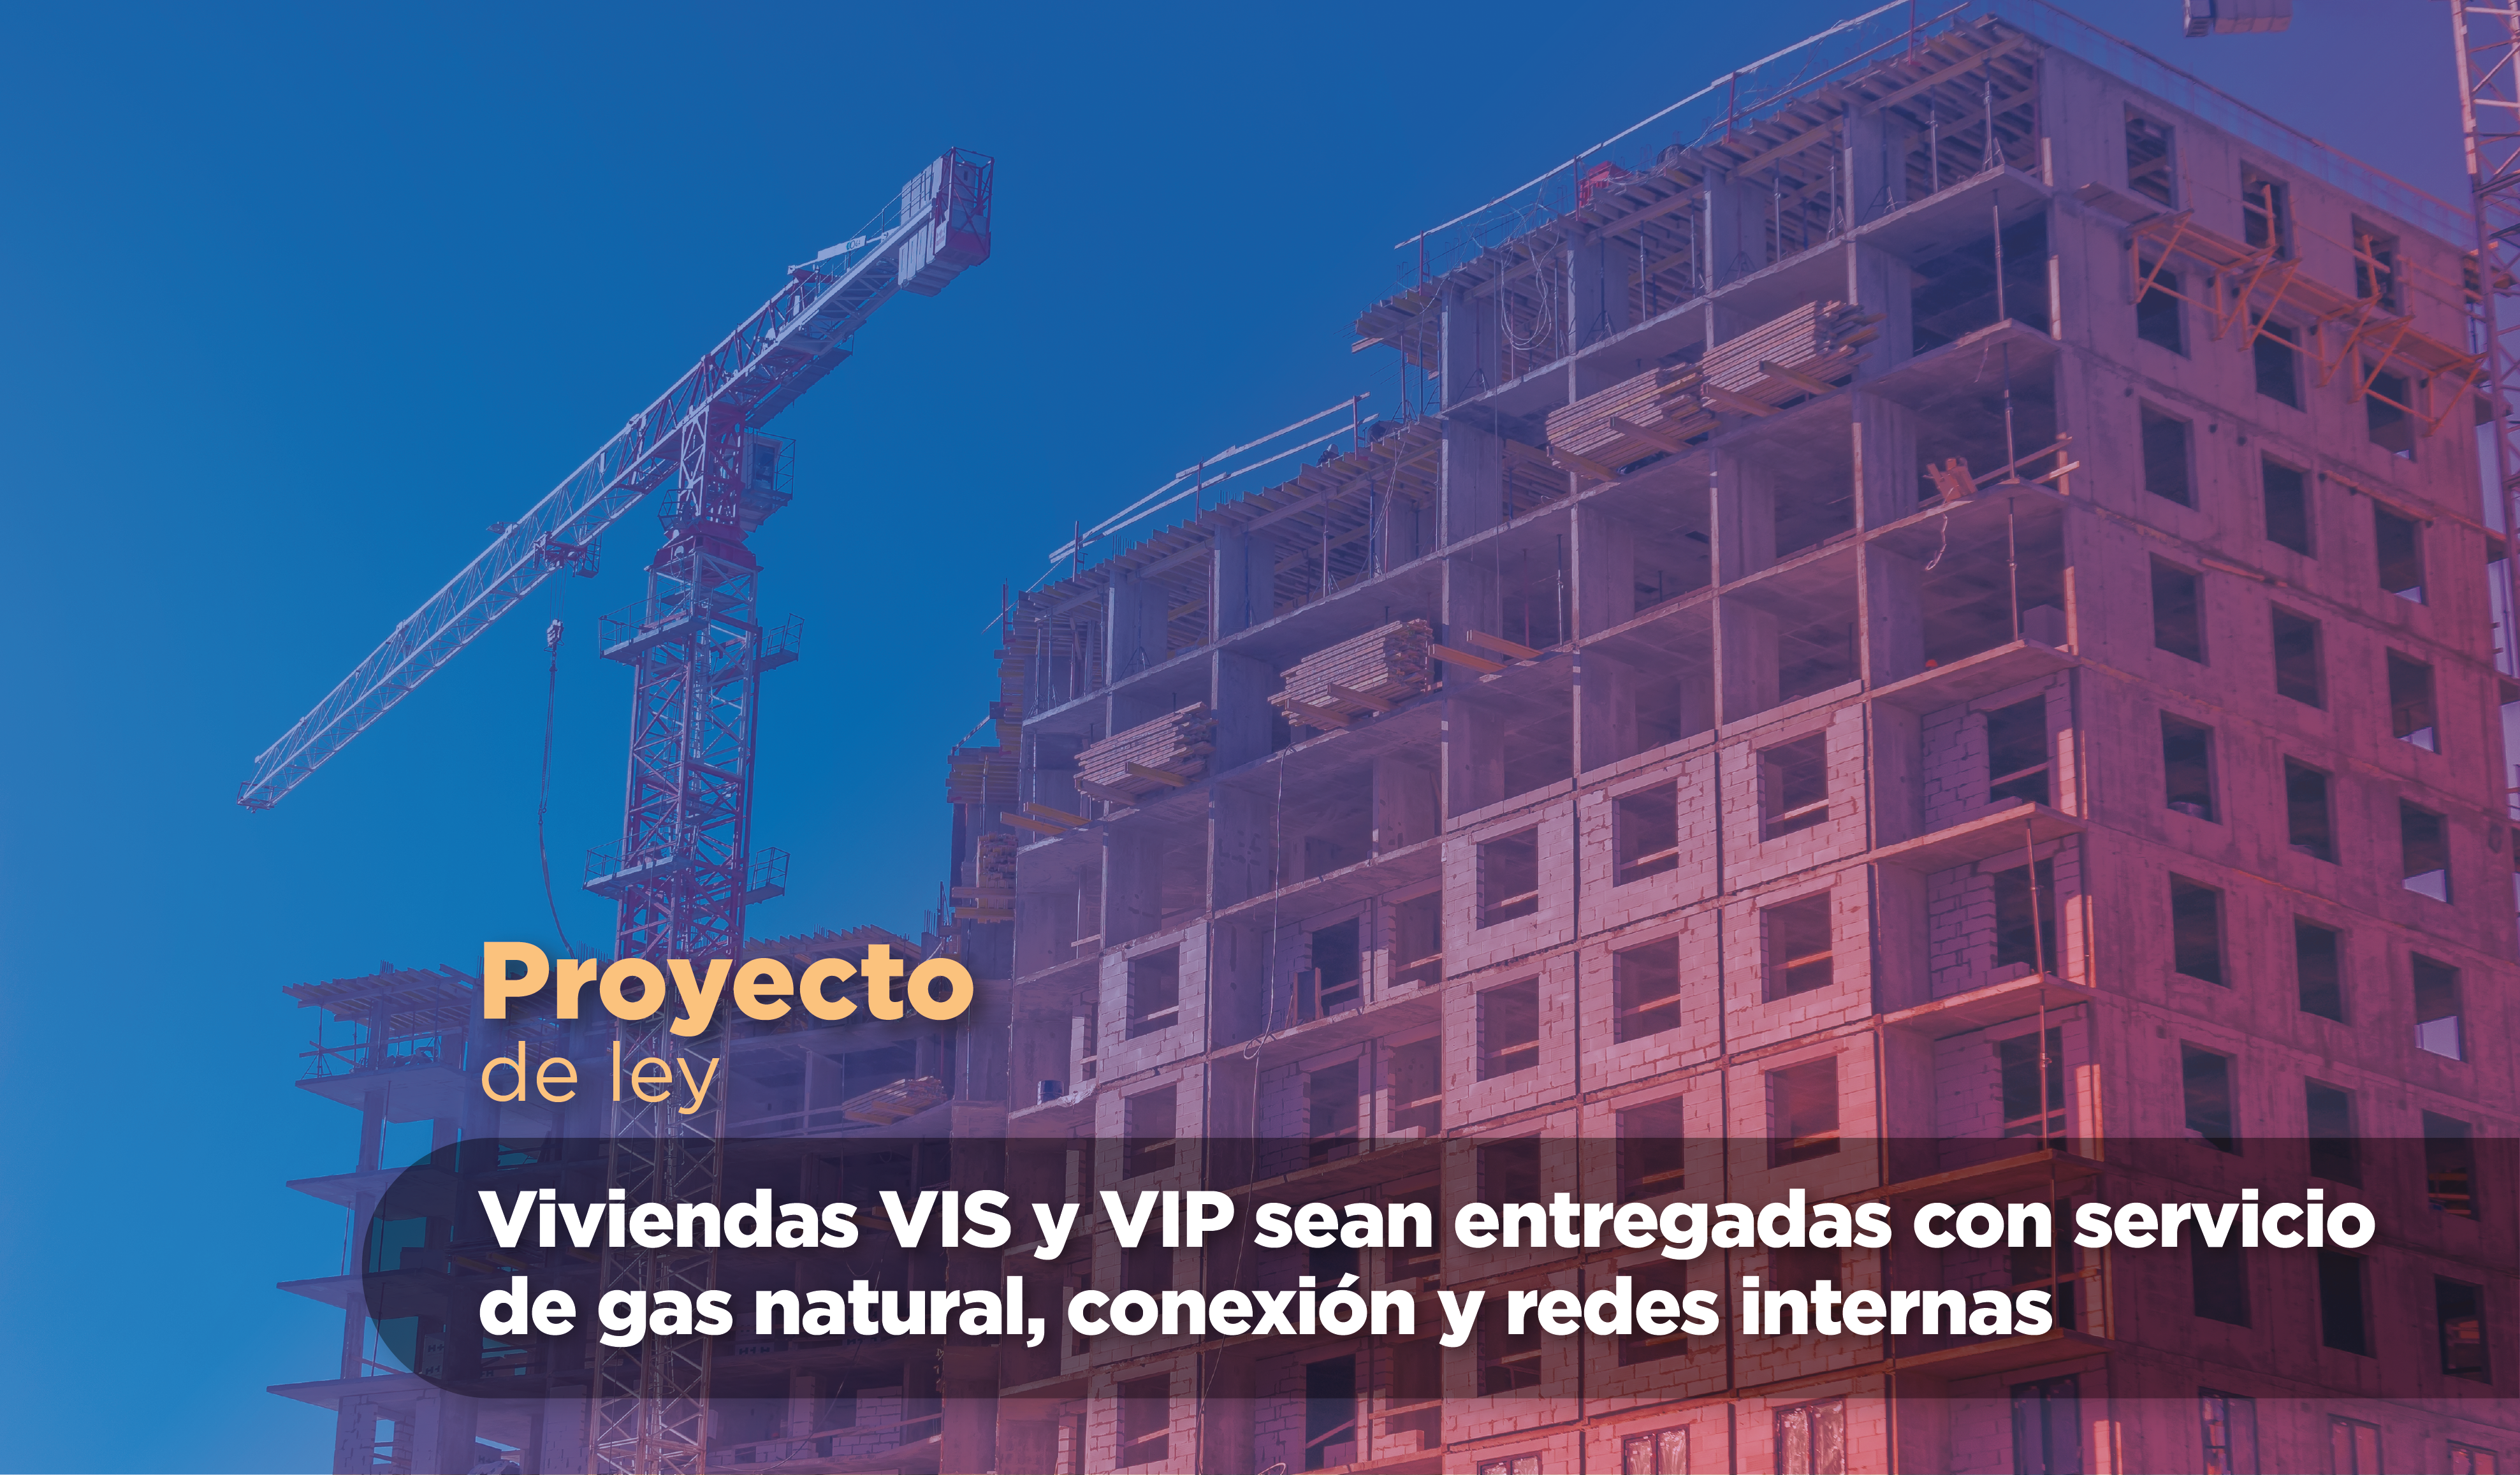 viviendas VIS y VIP sean entregadas con servicio de gas natural, conexión y redes internas